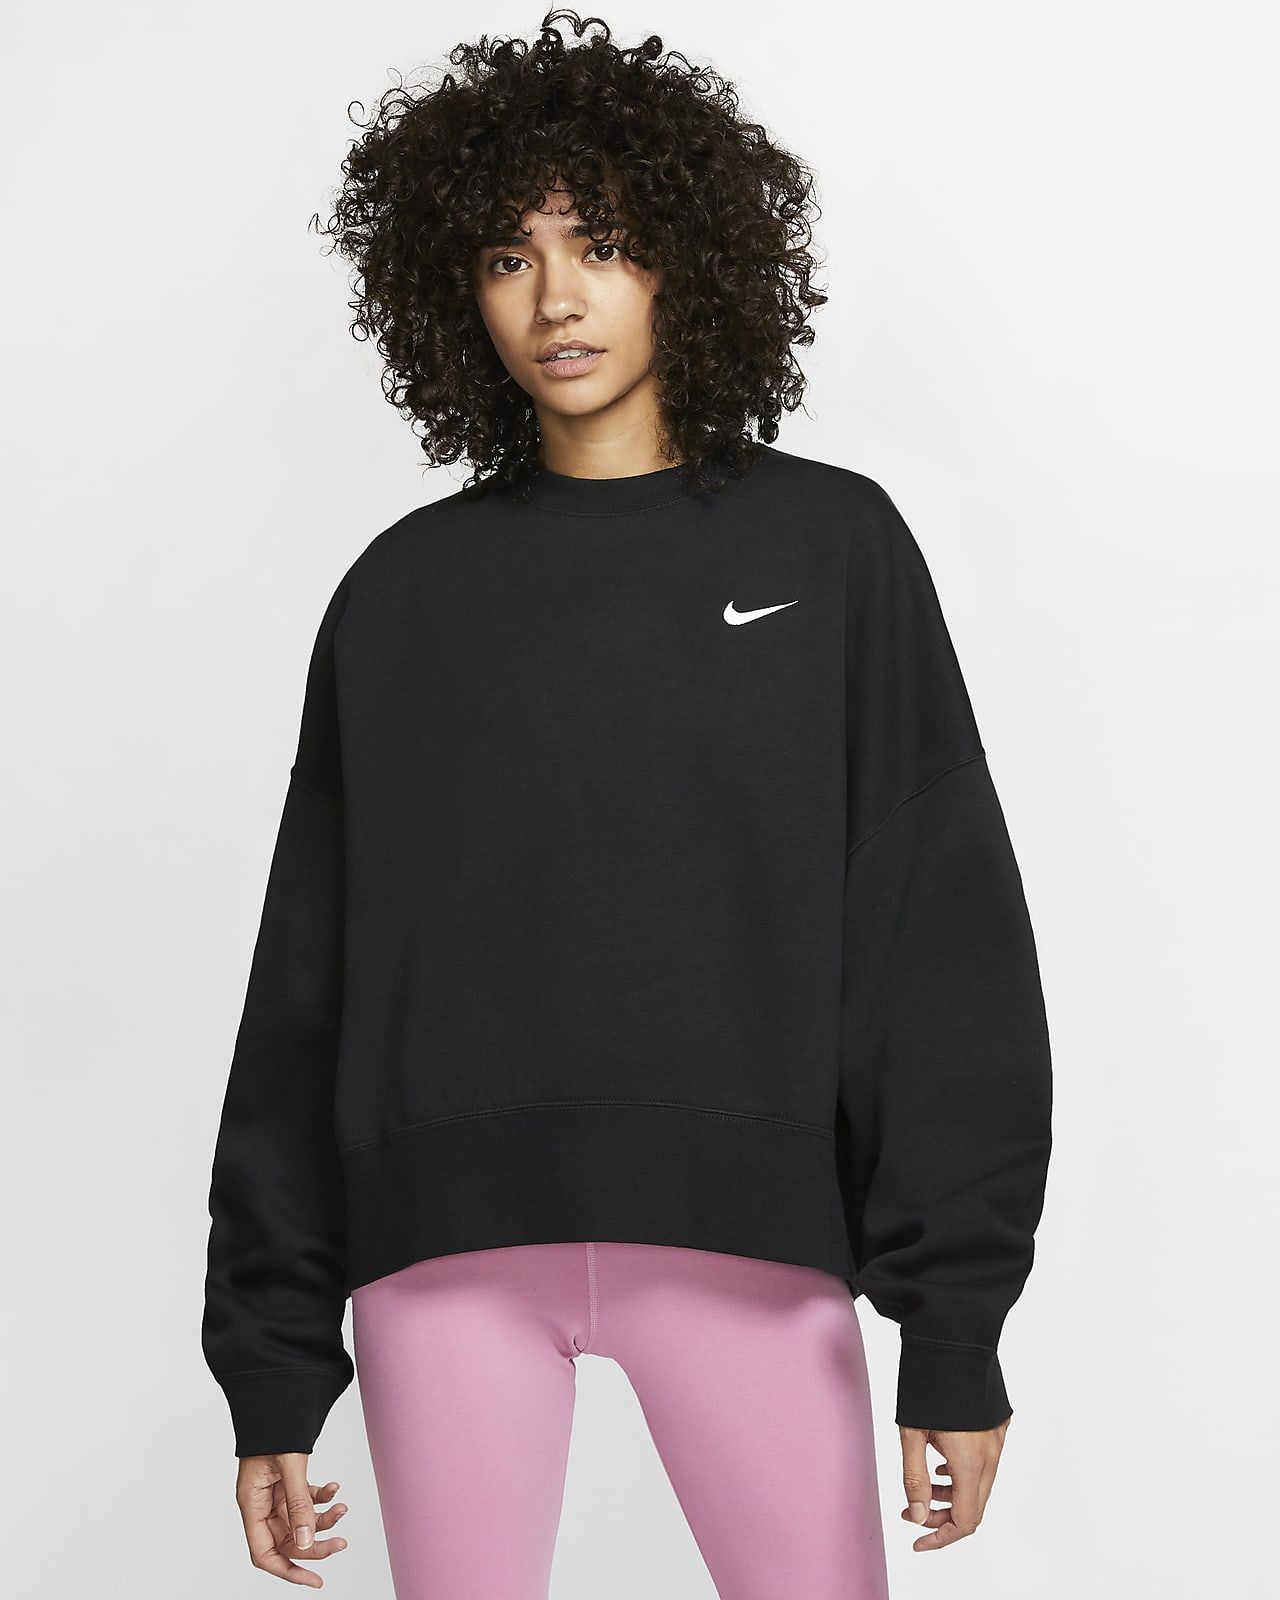 Nike Sportswear Essential Women's Fleece Crew. Nike.com | Nike (US)